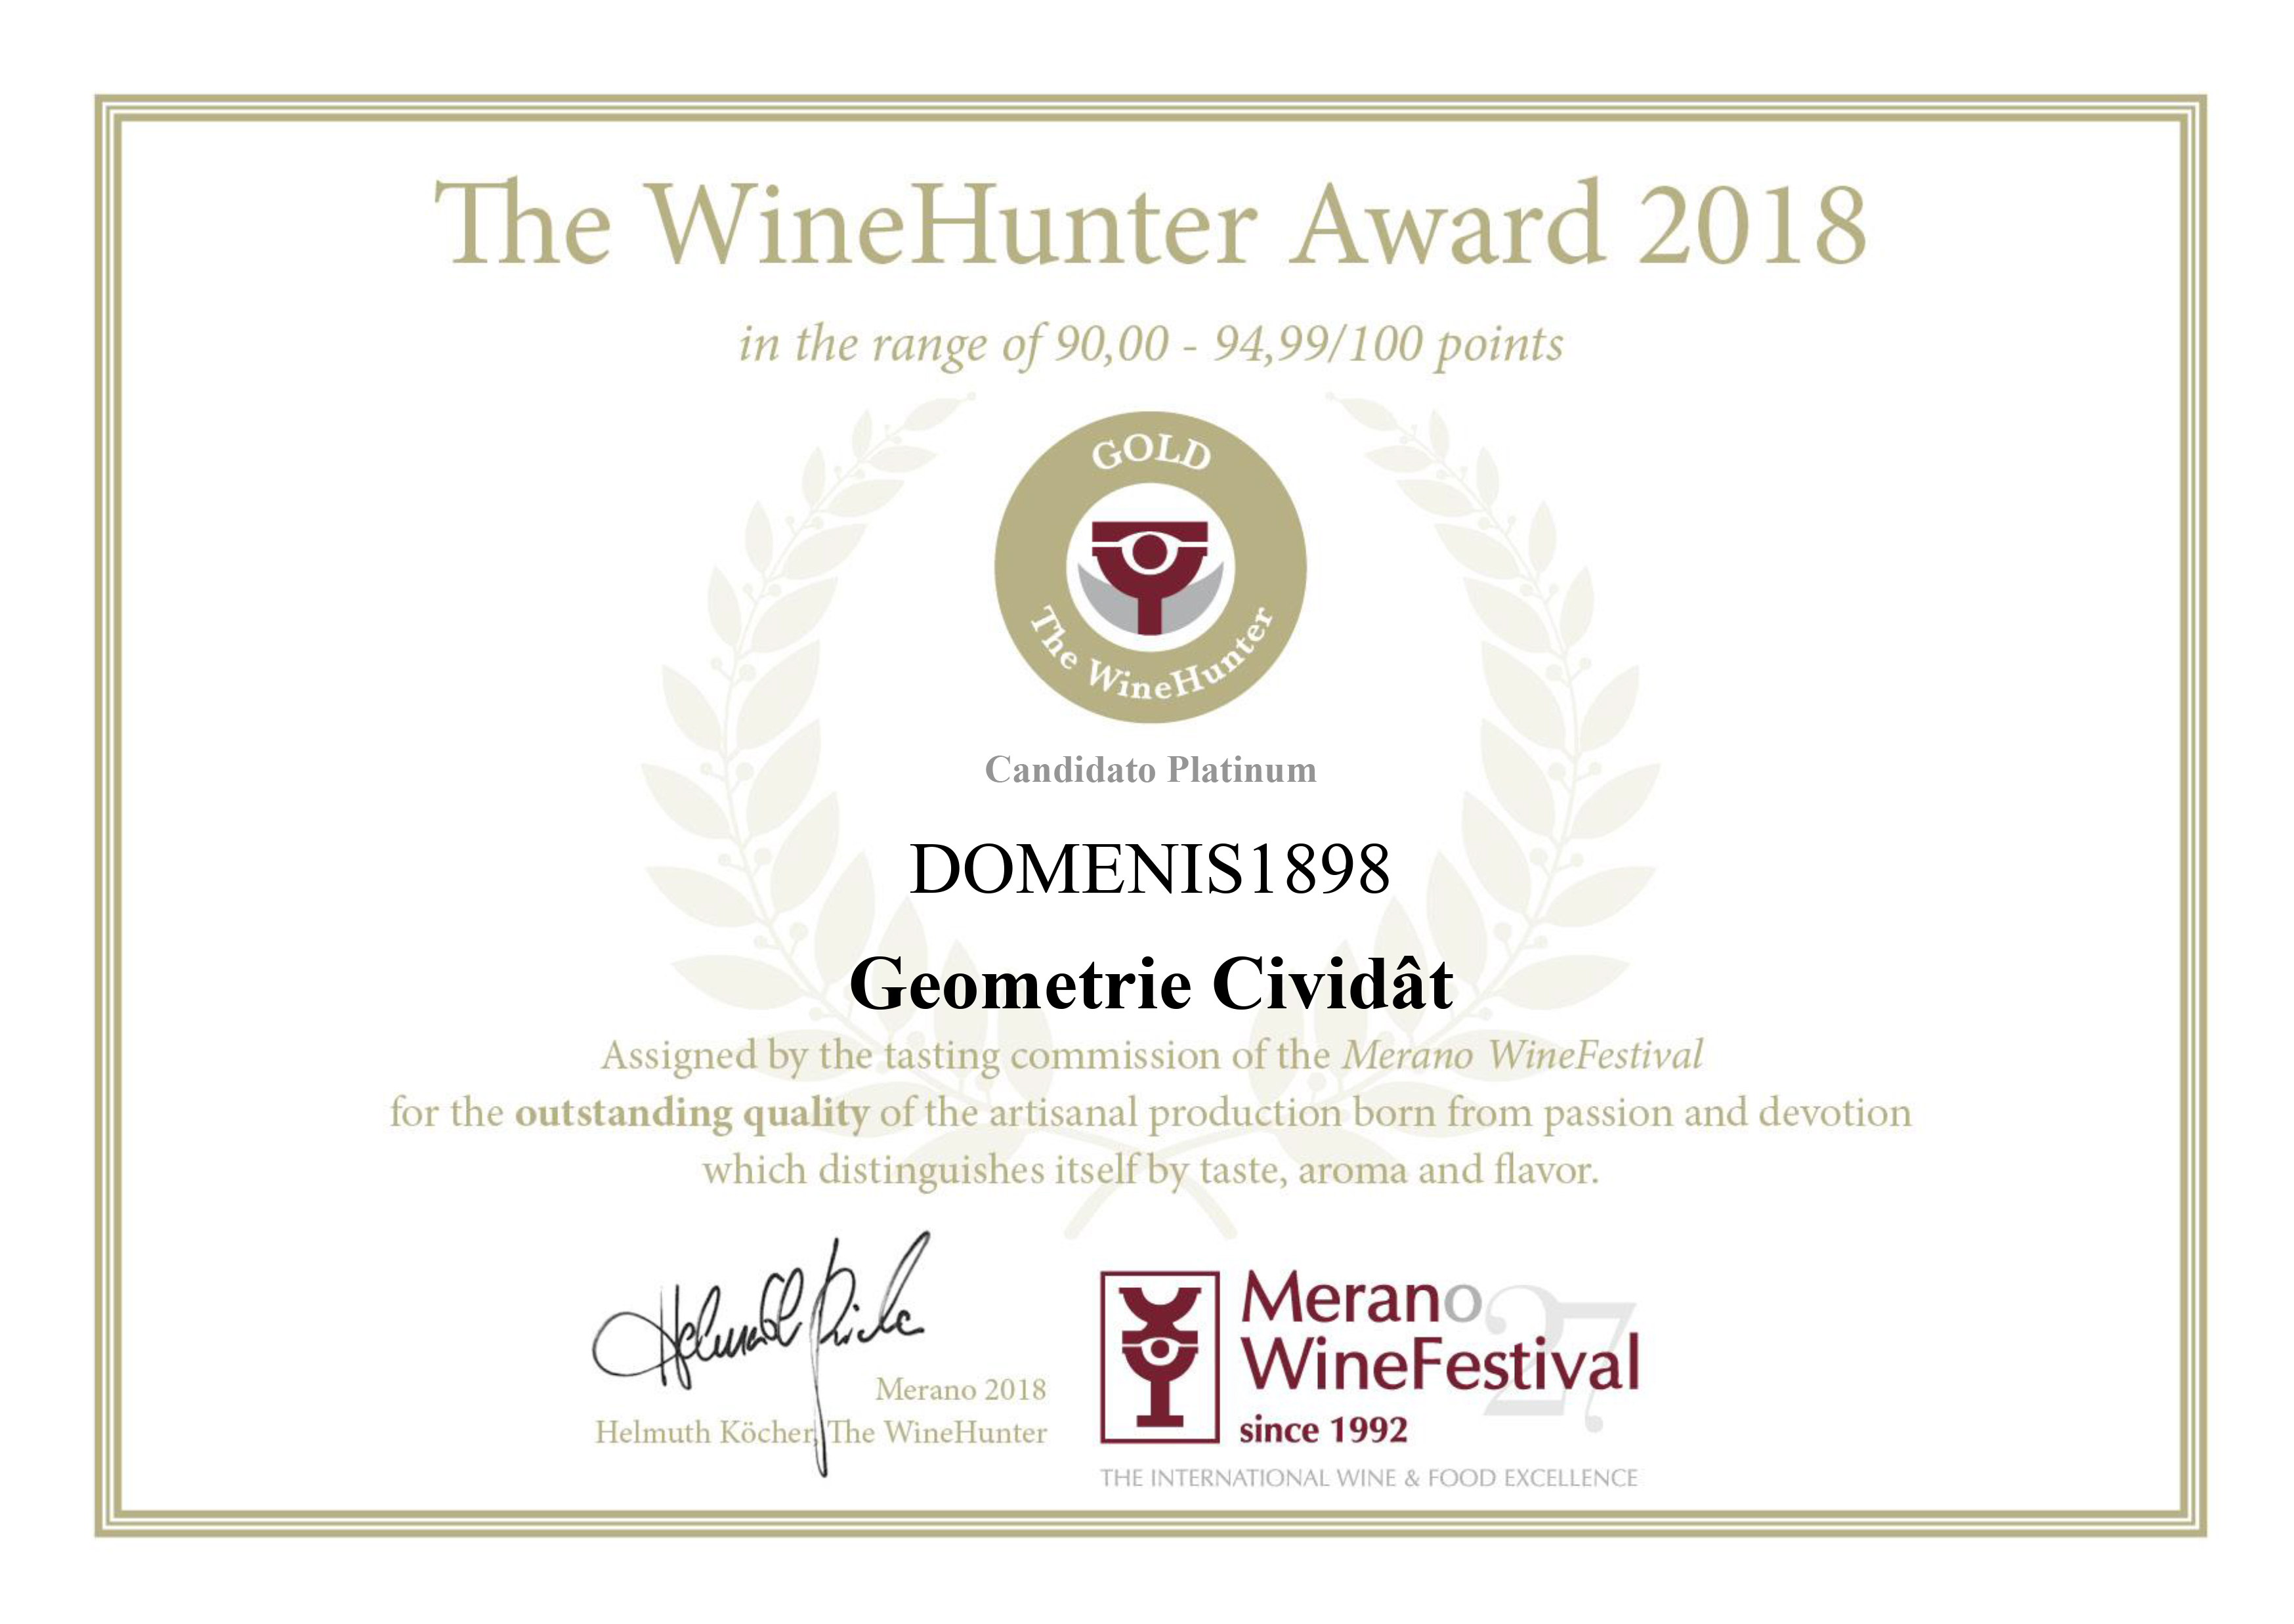 WINEHUNTER AWARD 2018 – PREMIO ORO – Geometrie Cividat – Candidato platinum